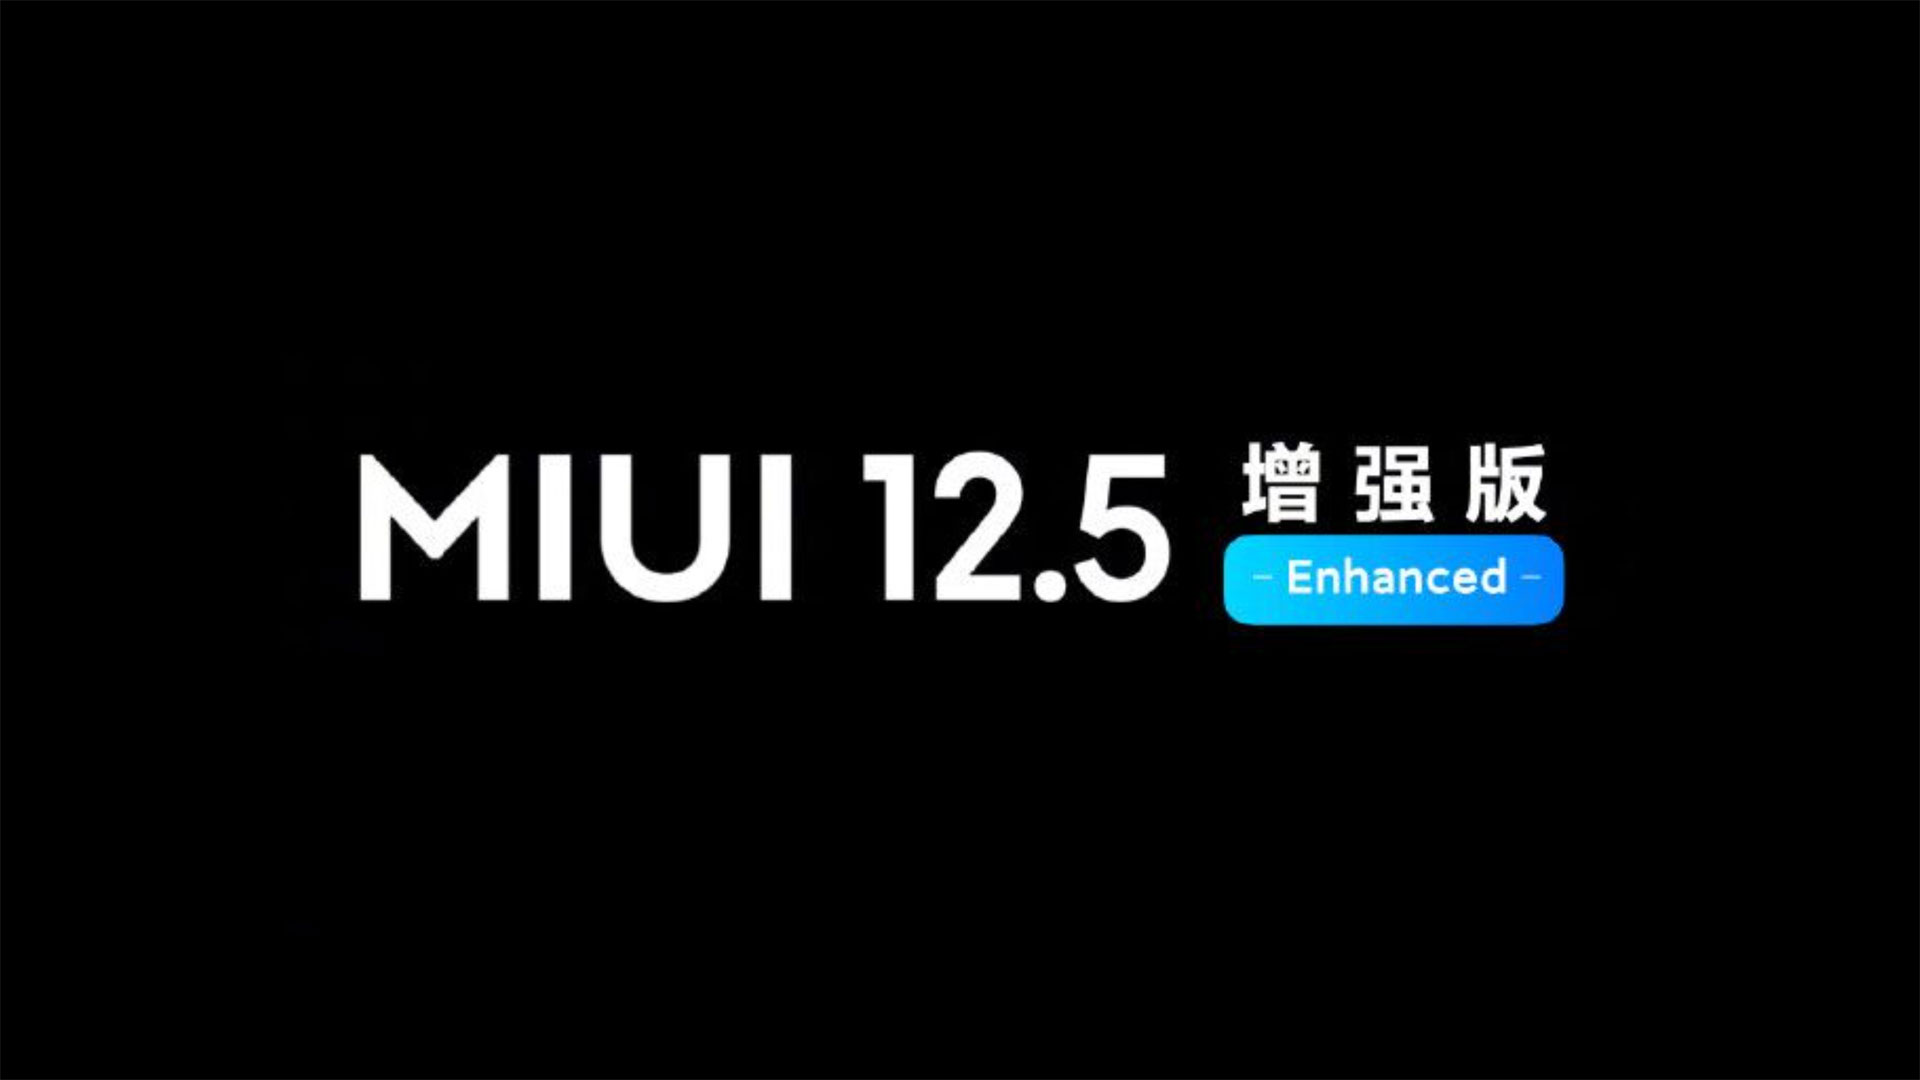 12 смартфонів Xiaomi отримають MIUI 12.5 Enhanced - опублікований офіційний список